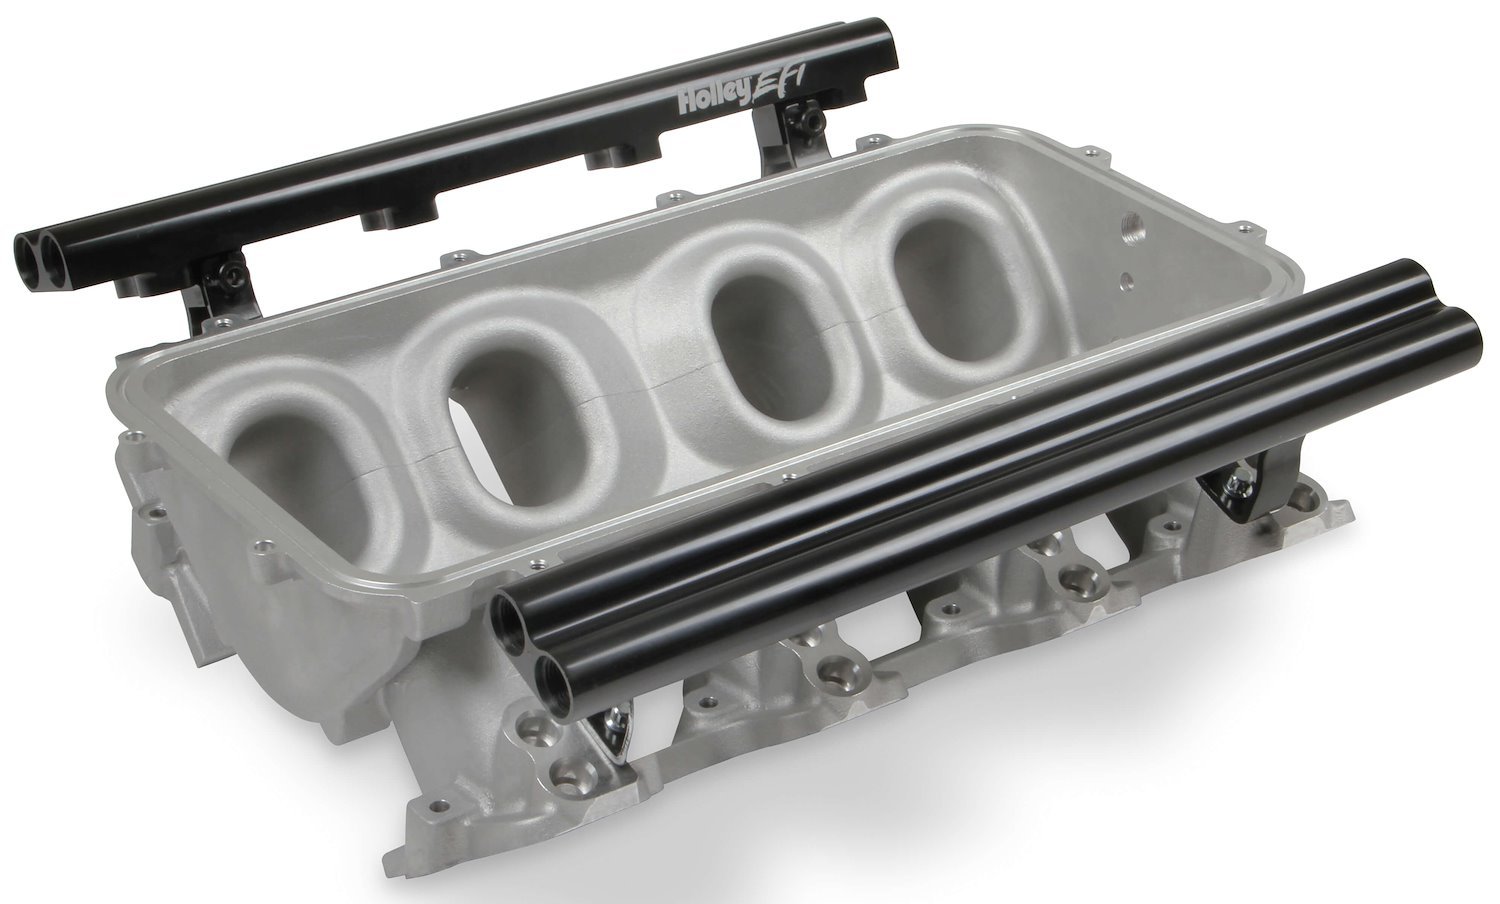 Intake Manifold Base and Dual Fuel Rail Kit for Holley Modular Lo-Ram EFI Intake Manifold - 510-300-620